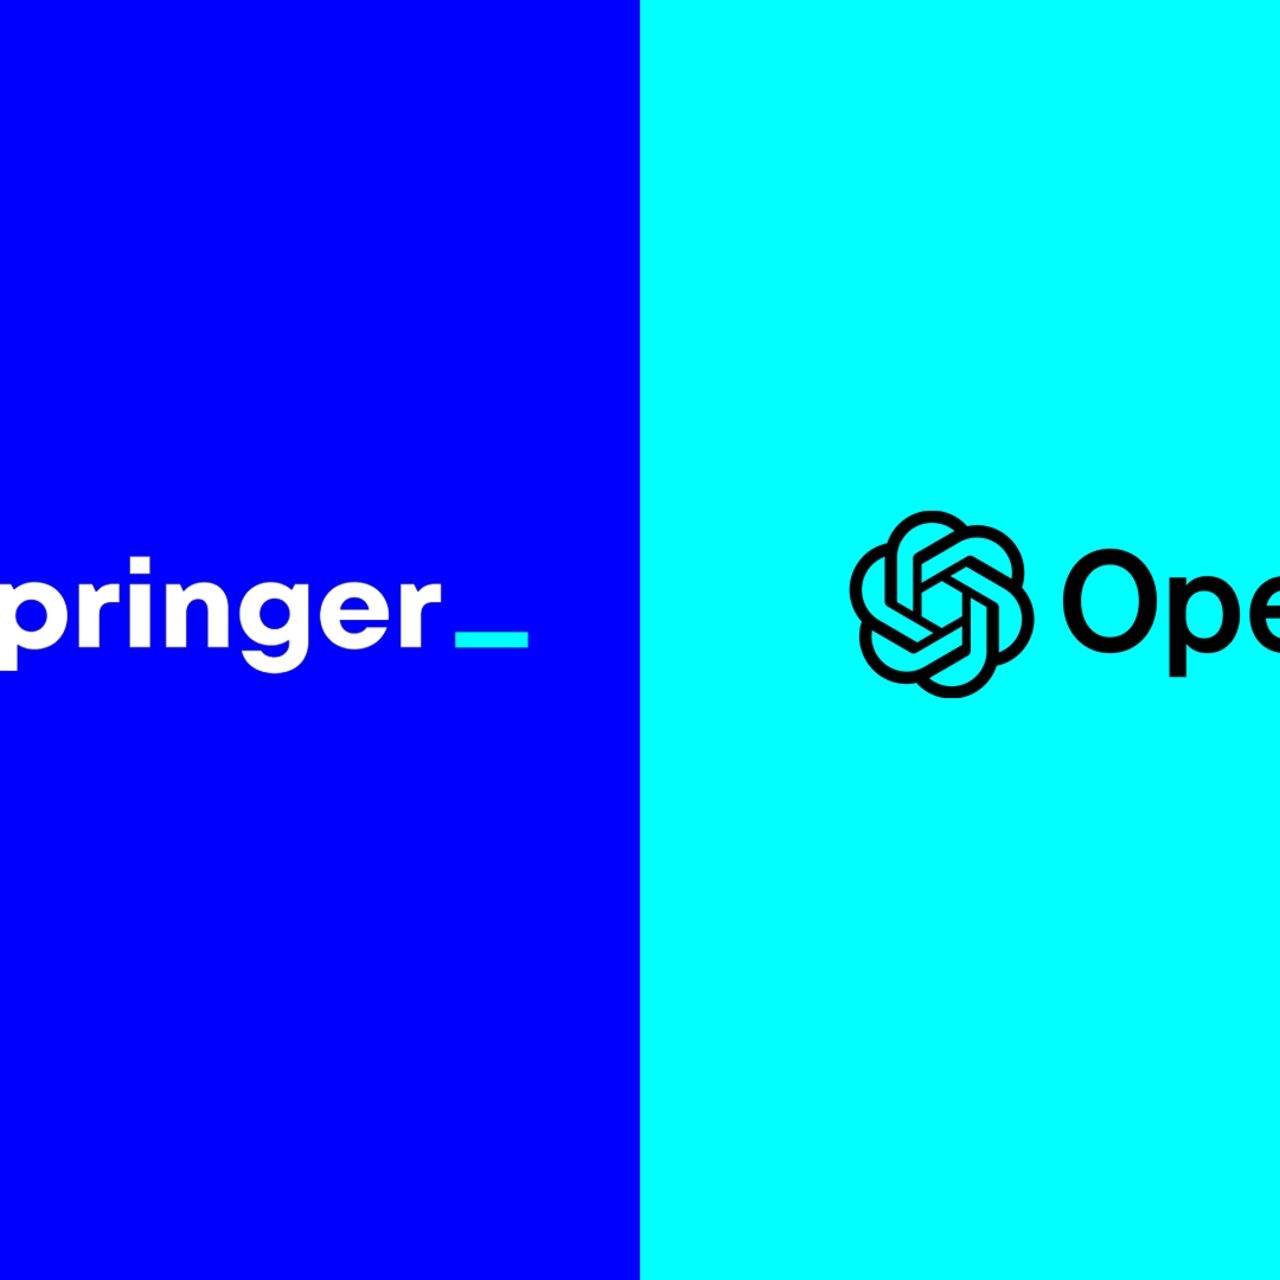 Jurnalistika: Axel Springer və OpenAI süni intellekt əsrində müstəqil jurnalistikanı gücləndirmək üçün qlobal tərəfdaşlıq elan etdilər